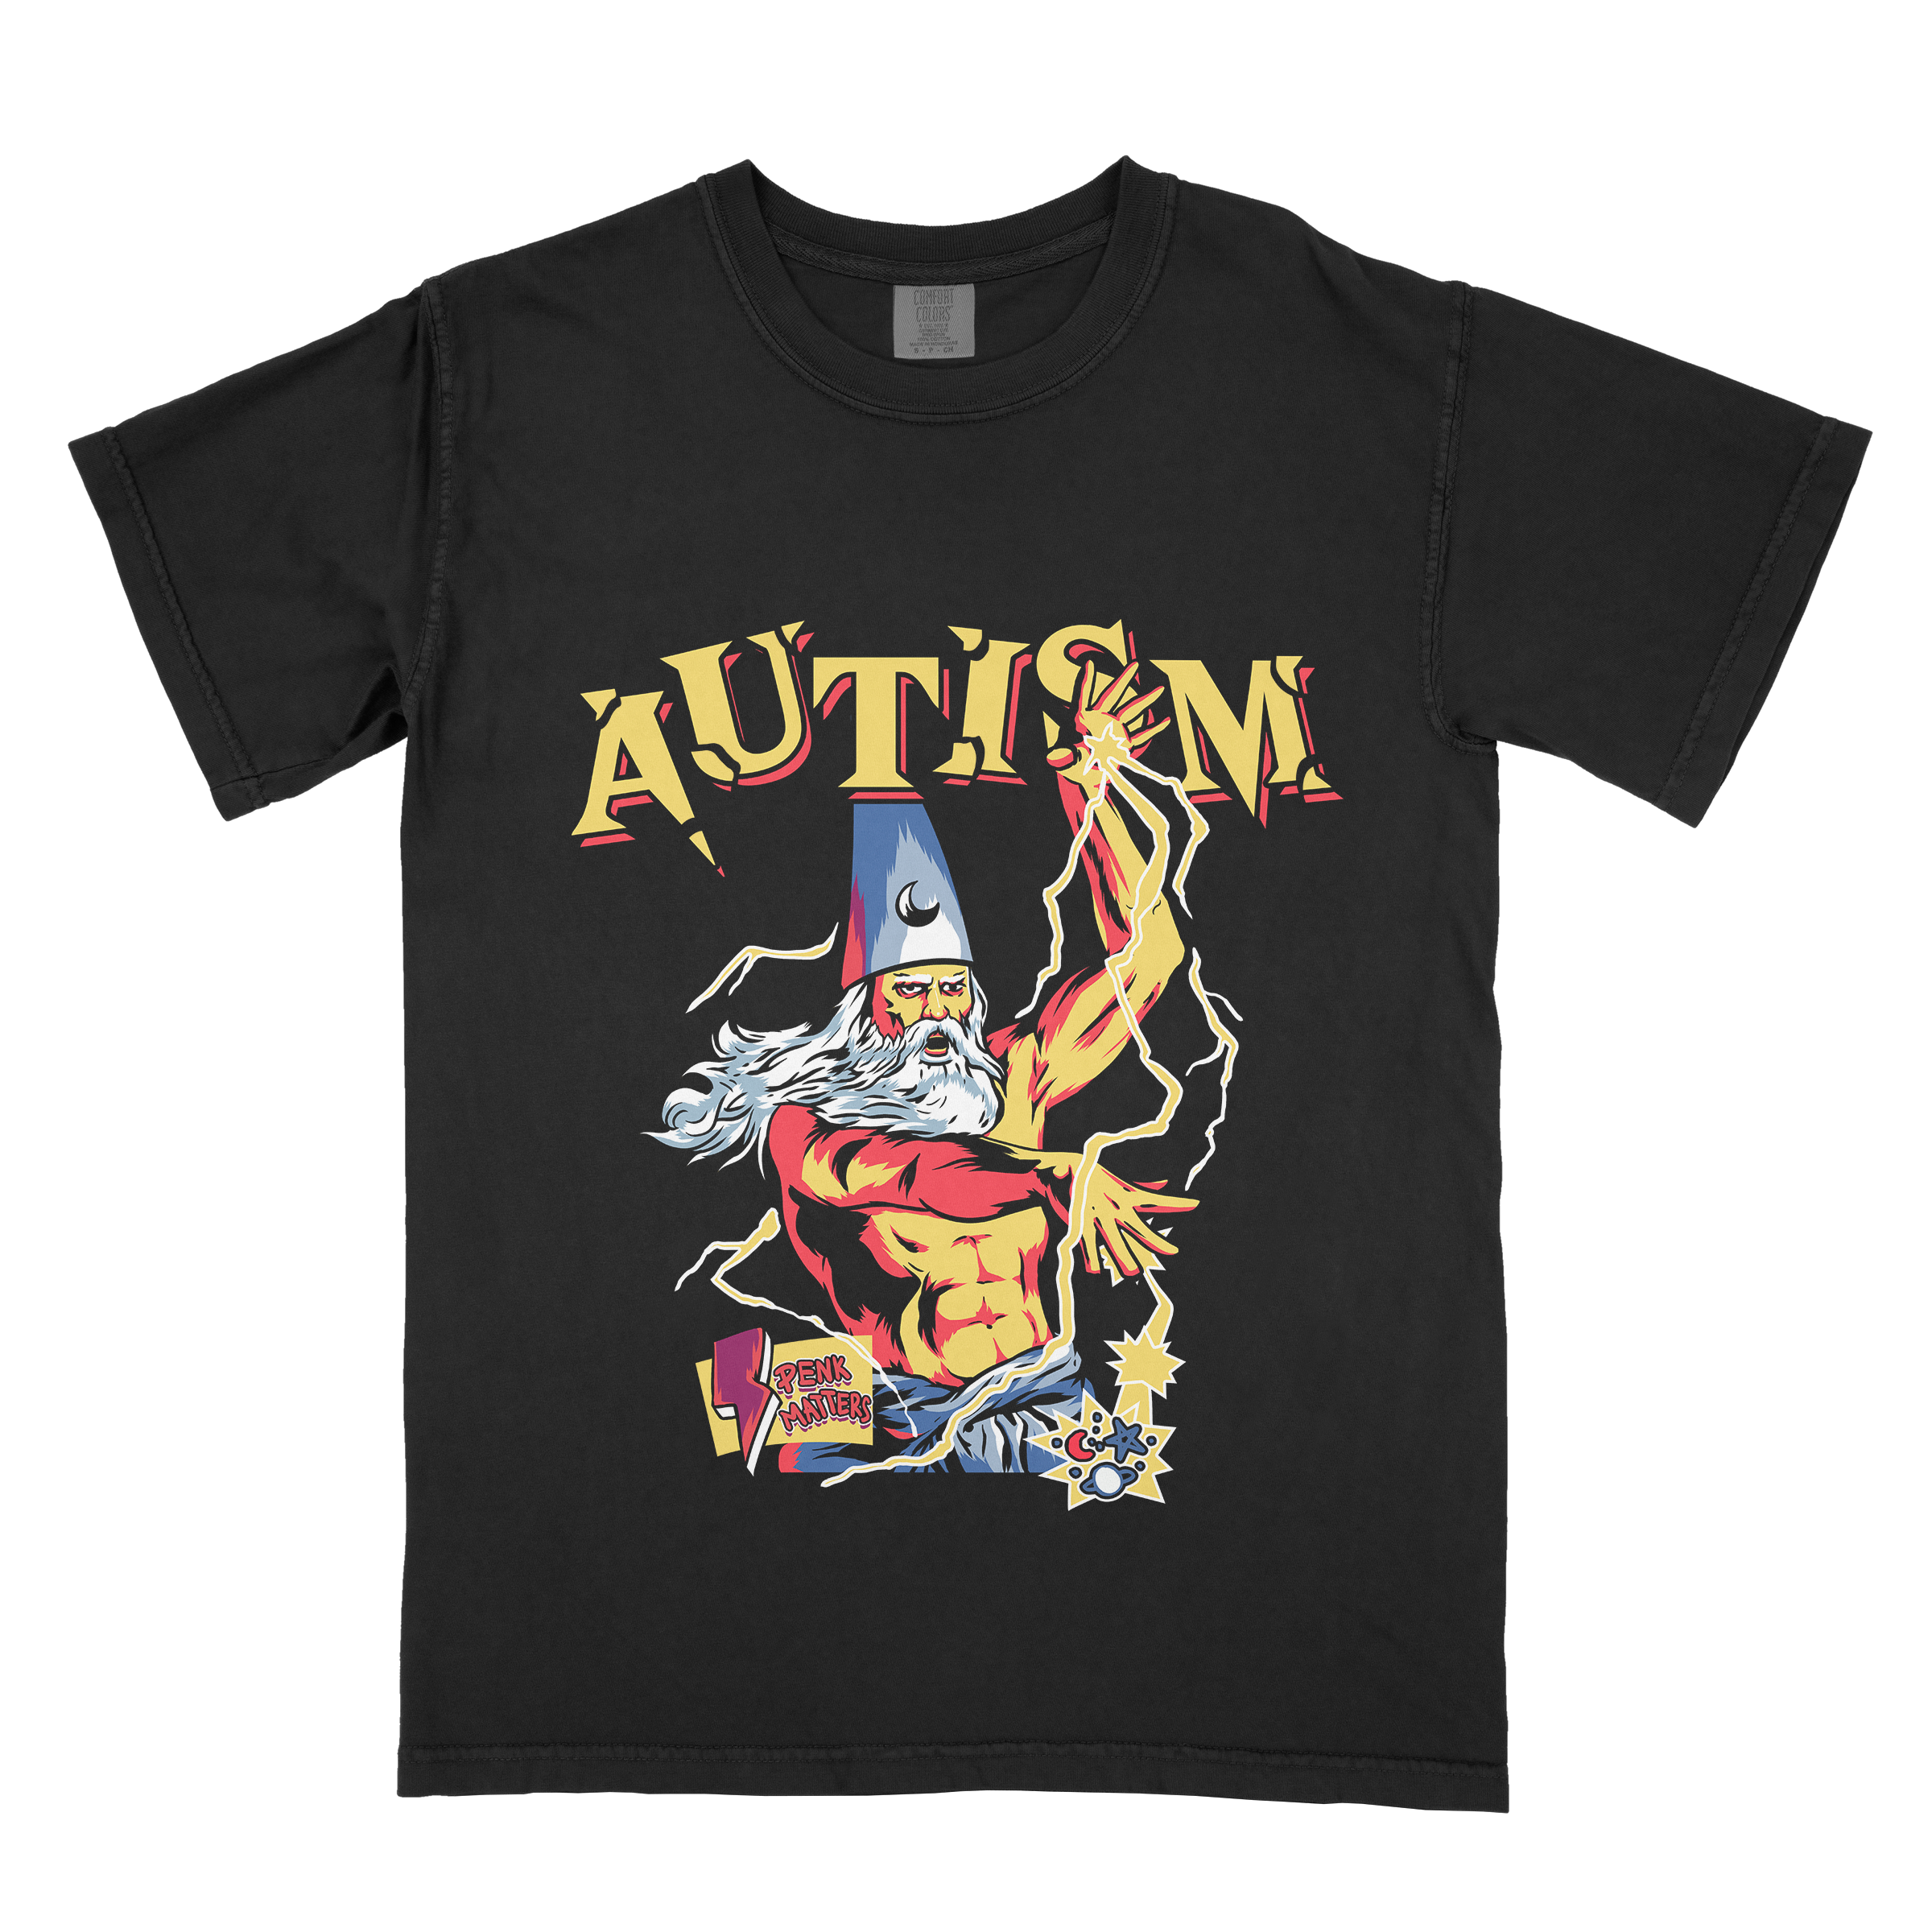 "Autism" T-shirt